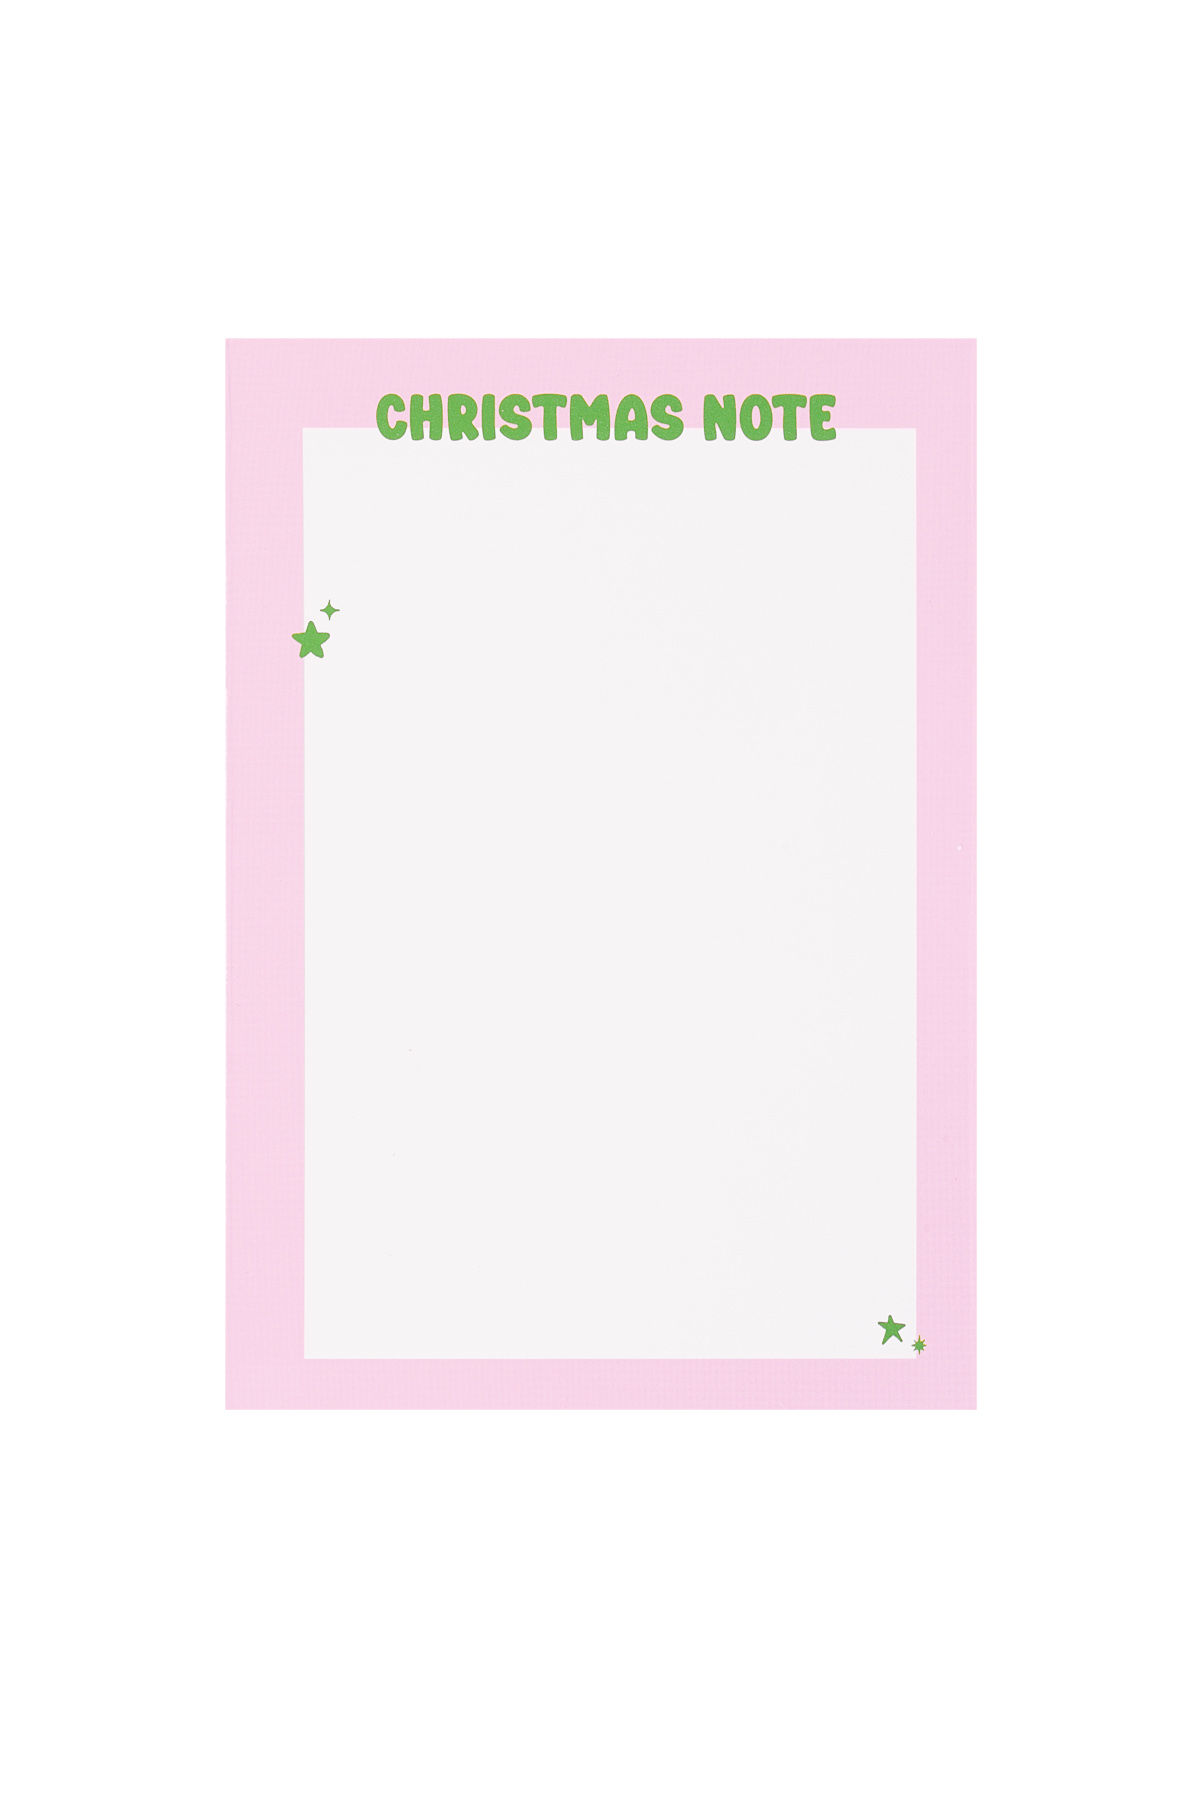 La tarjeta de felicitación navideña se siente un poco como Navidad: rosa Imagen2